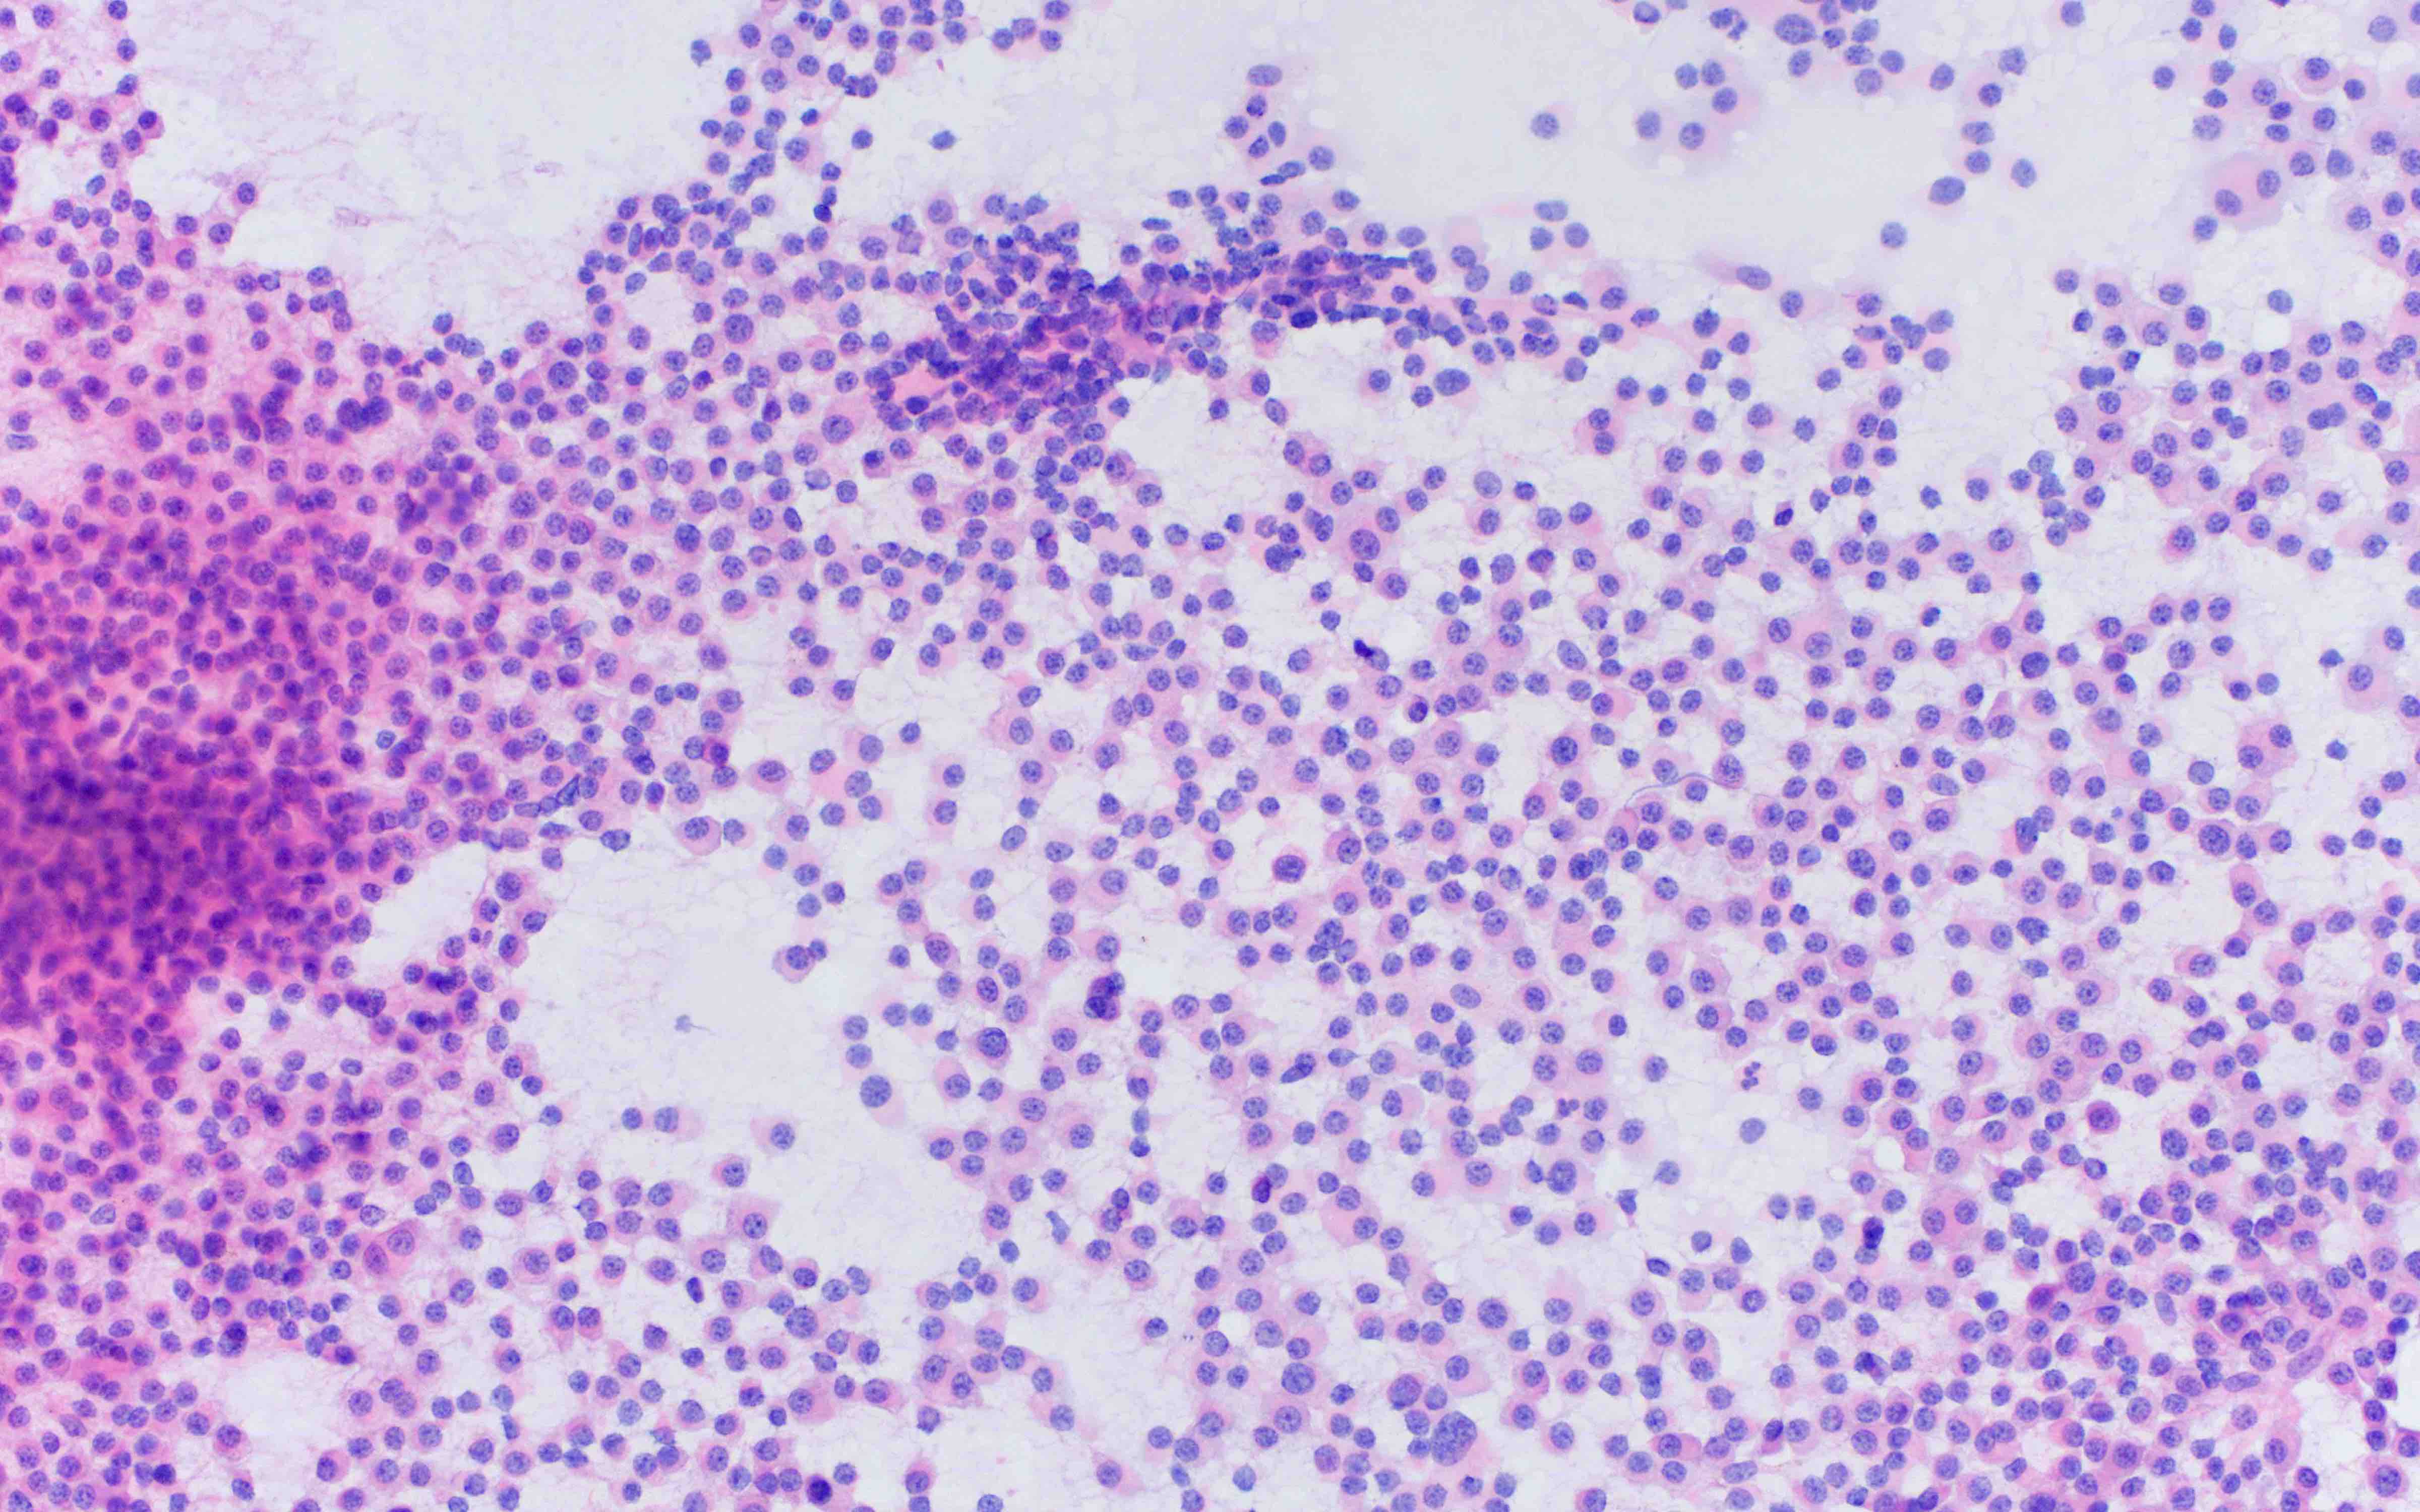 Pathology Outlines - Plasma cell myeloma (multiple myeloma)